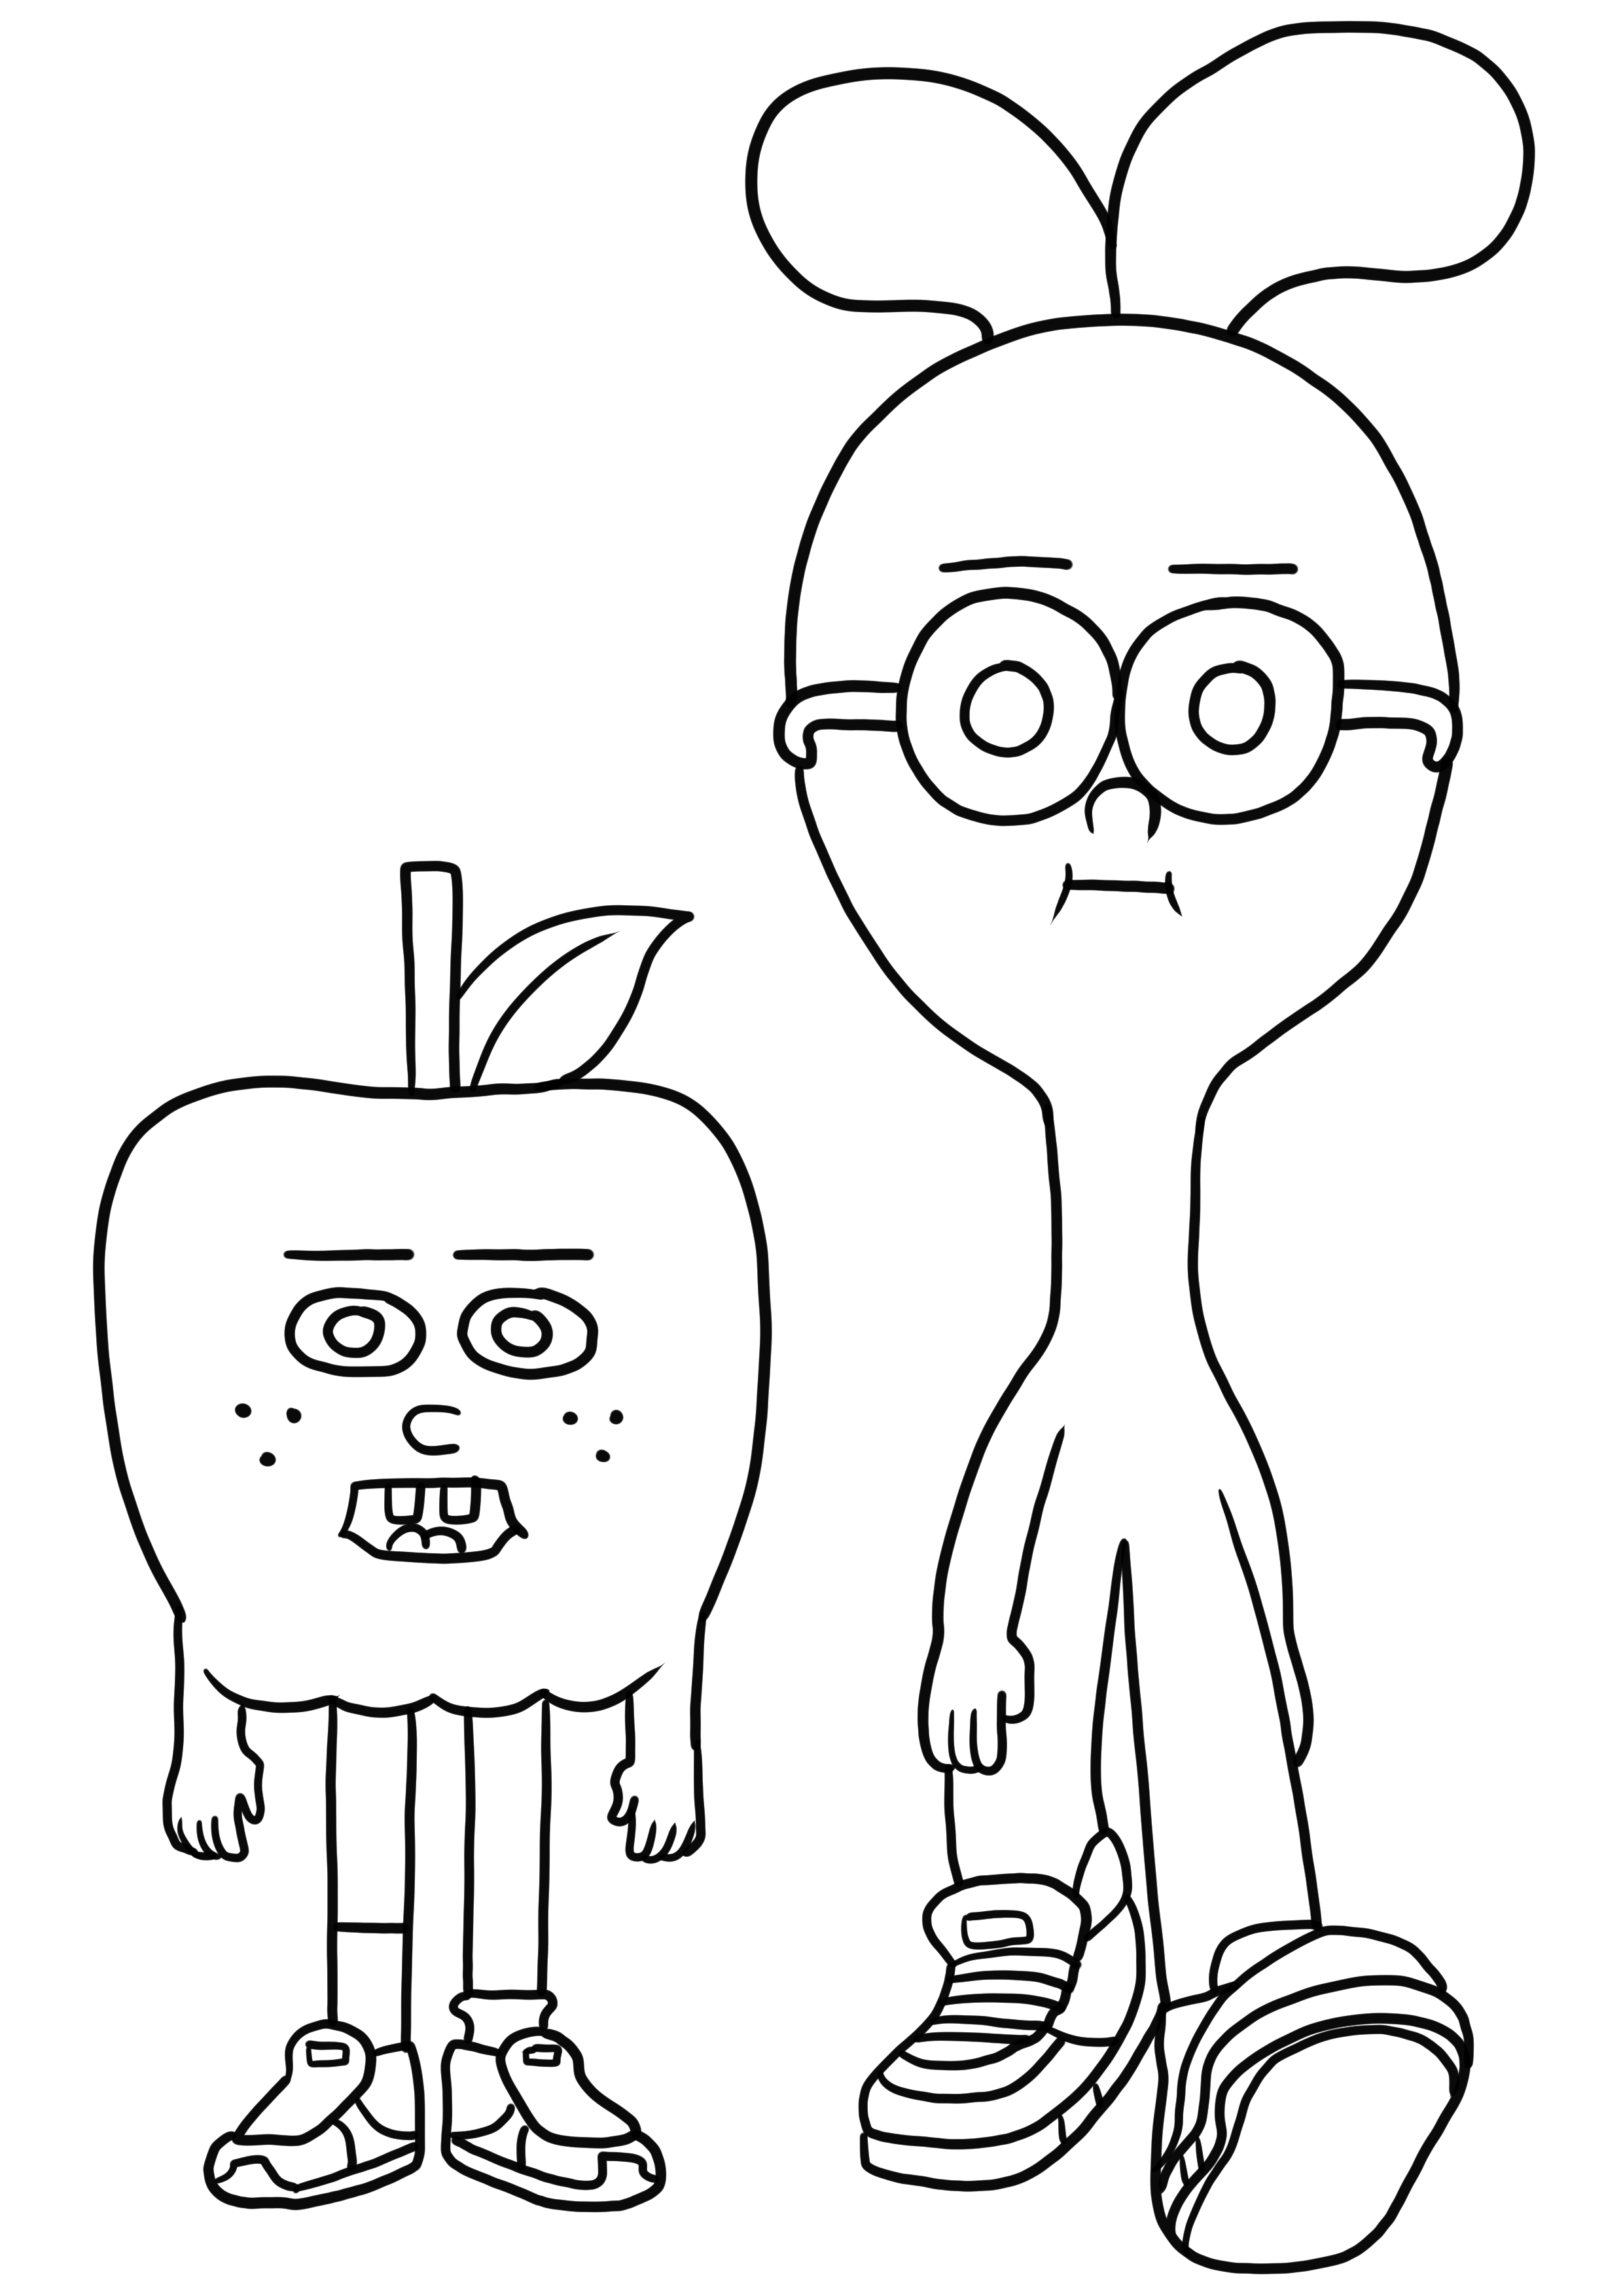 Apple & Onion 01 målarbok för att skriva ut och färglägga